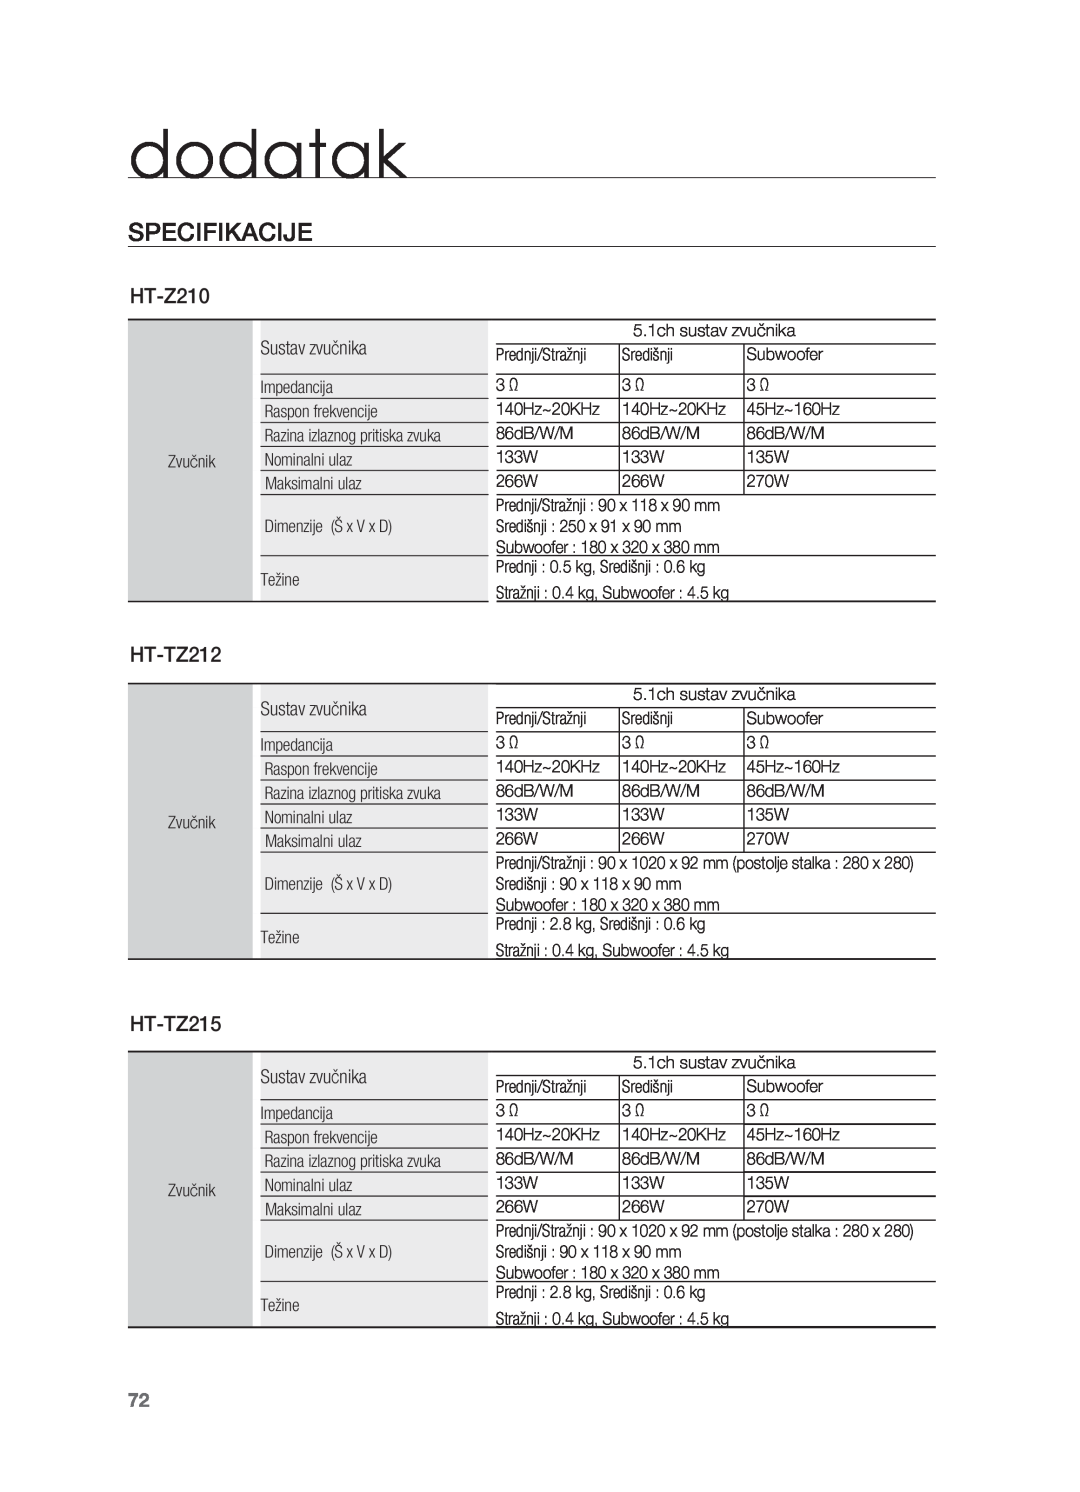 Samsung HT-TZ315R/EDC, HT-TZ212R/EDC, HT-Z310R/EDC, HT-Z210R/EDC, HT-TZ215R/EDC manual dodatak, Specifikacije 